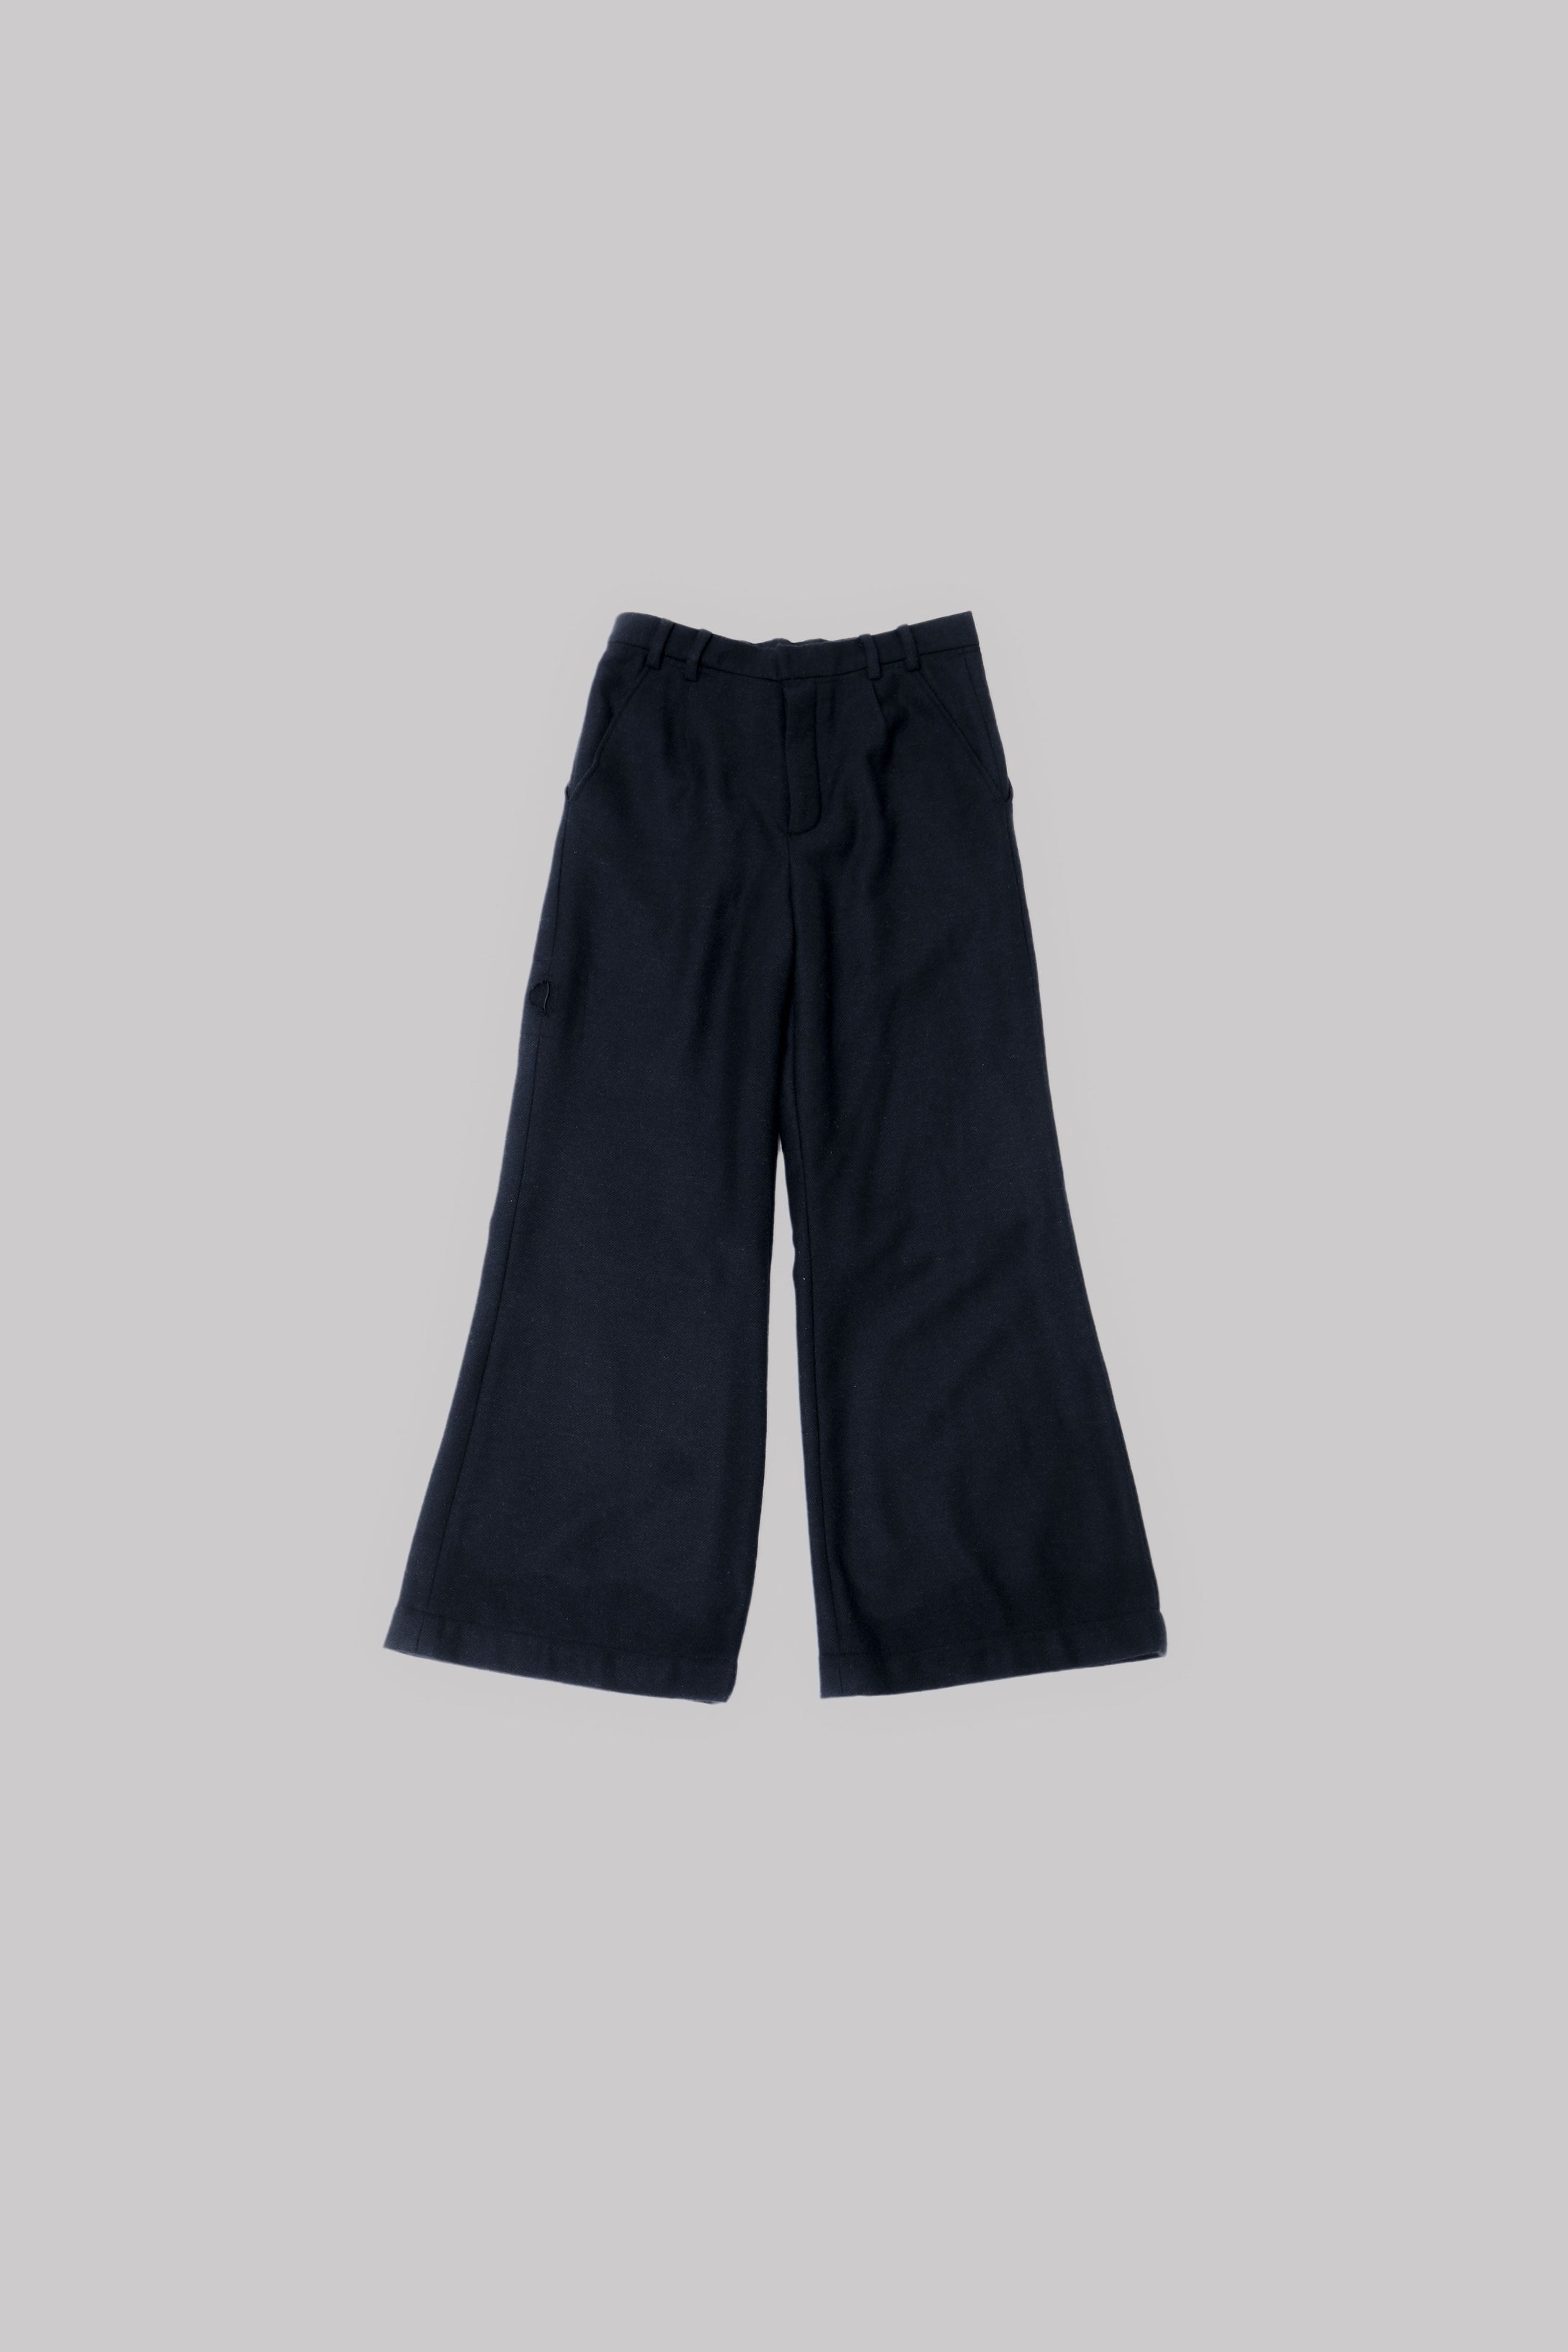 026 - Basic Flare Pants